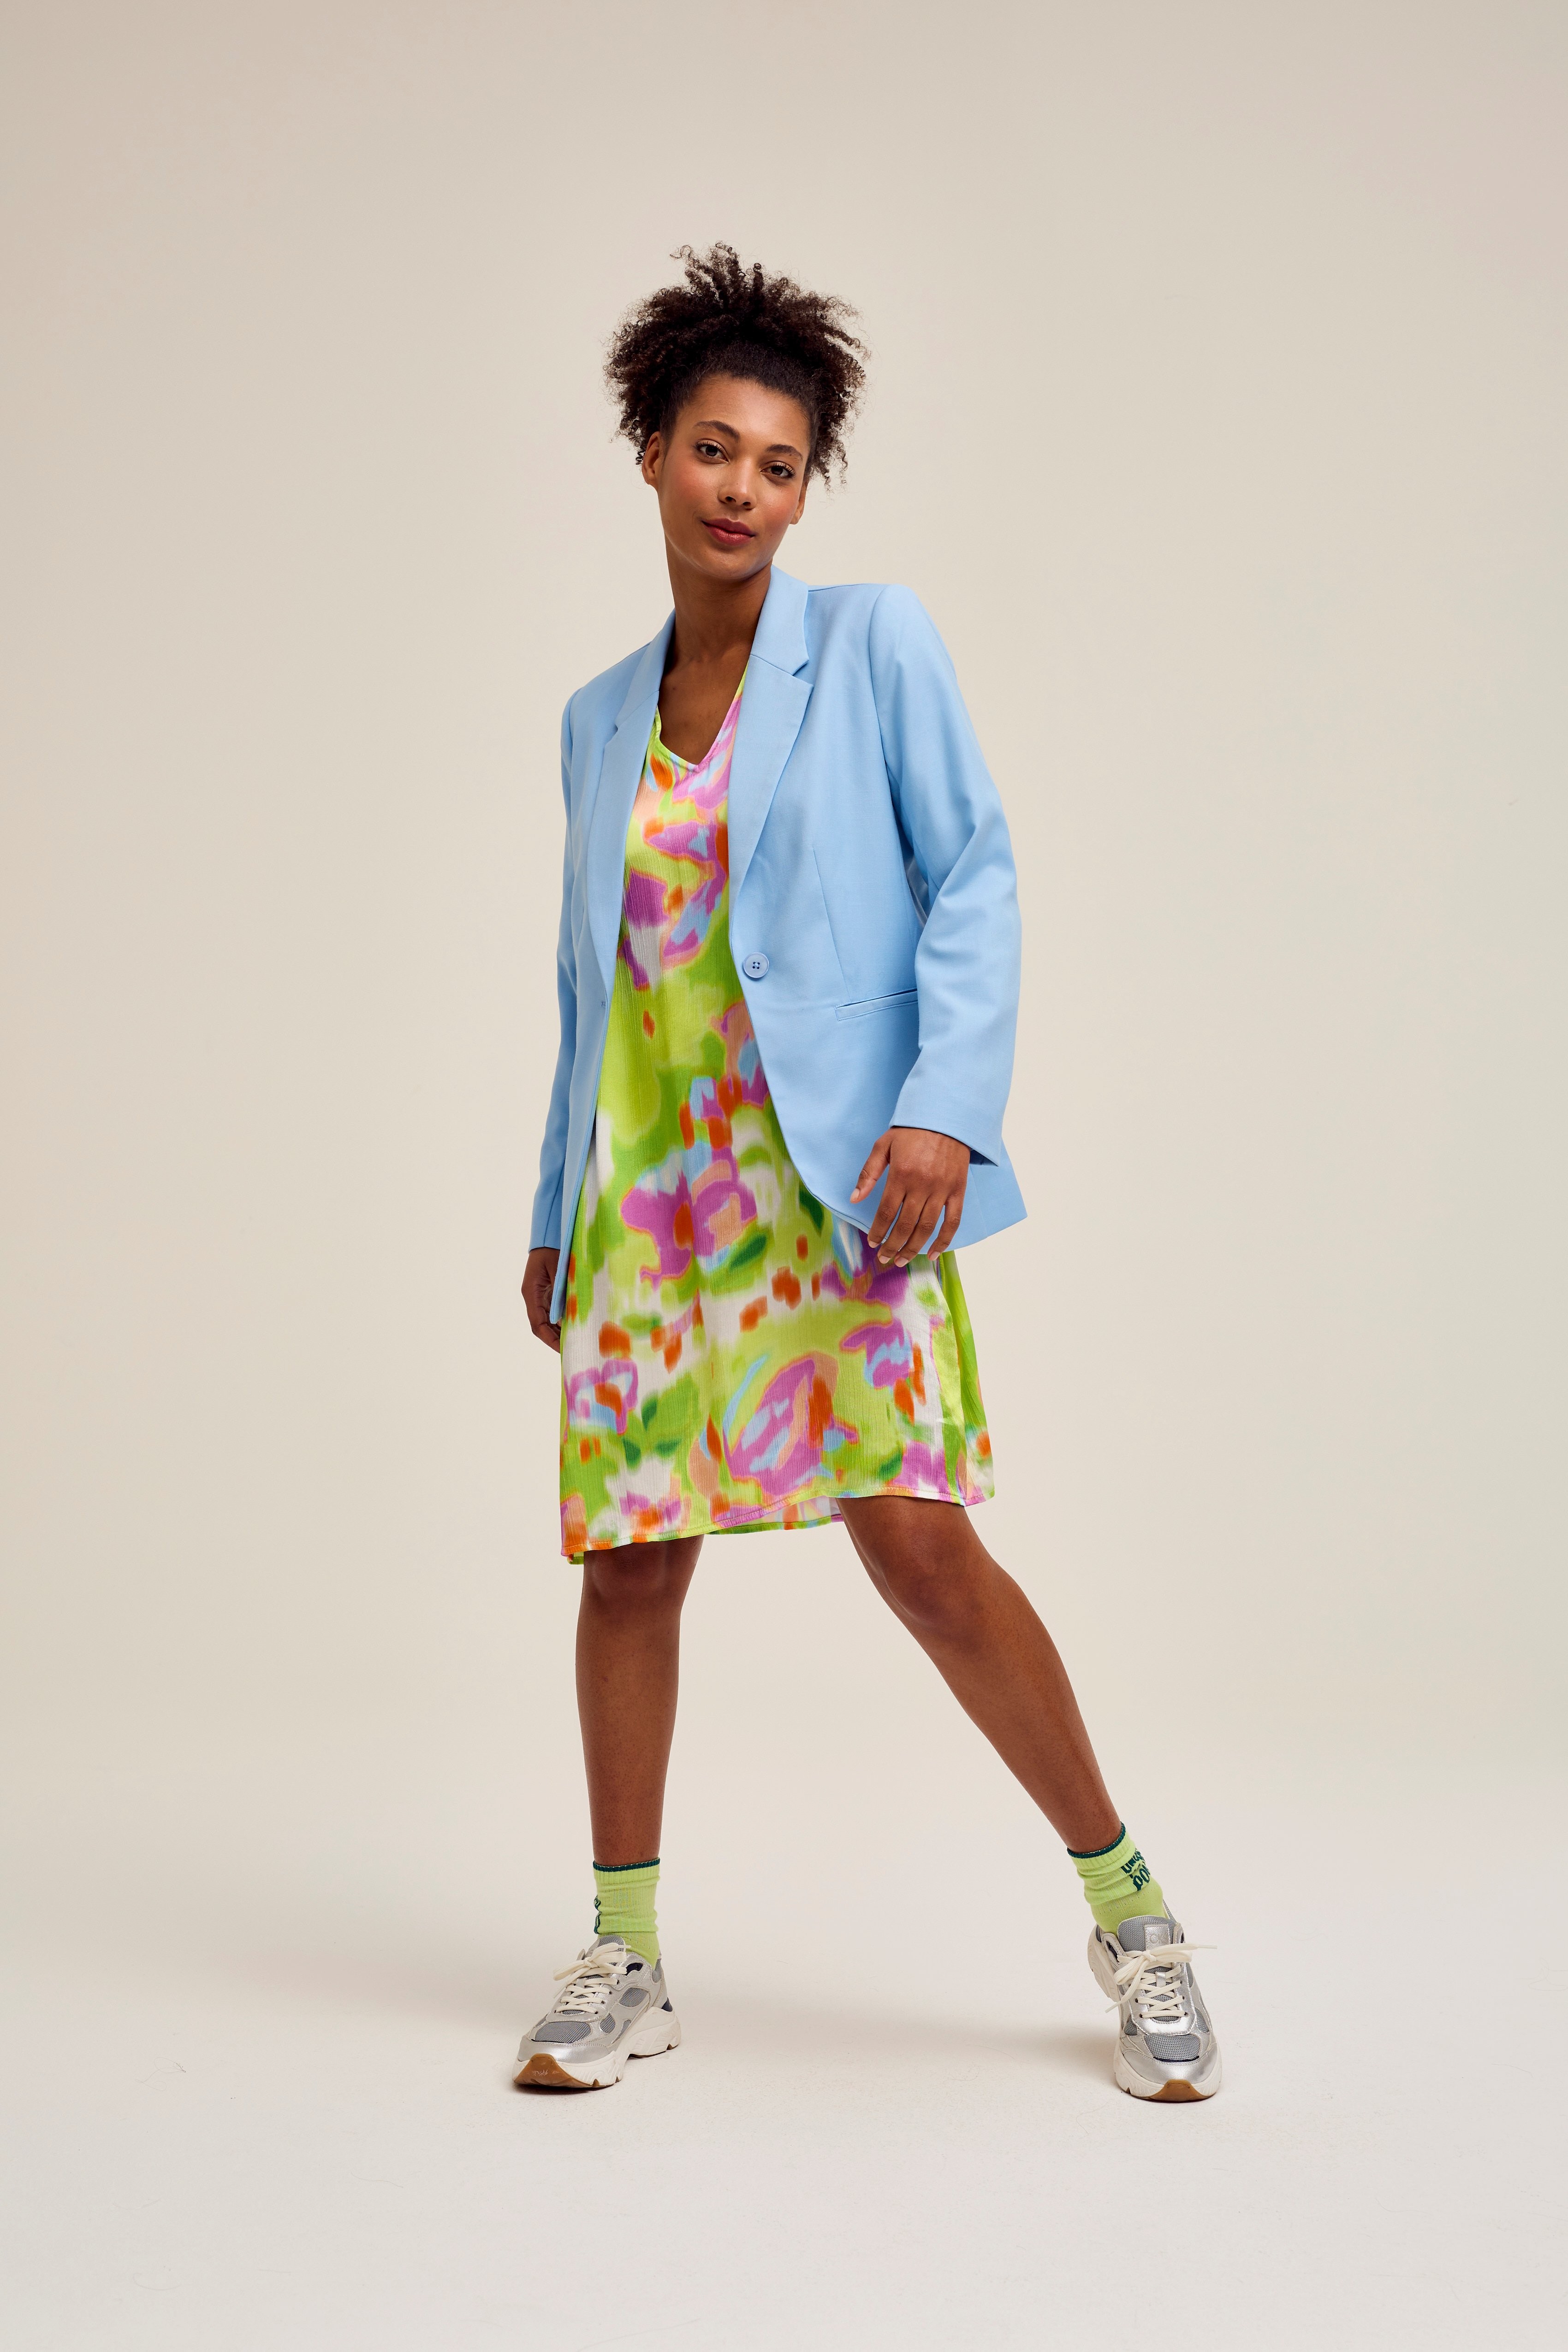 CKS Dames - SELLA - robe courte - multicolore